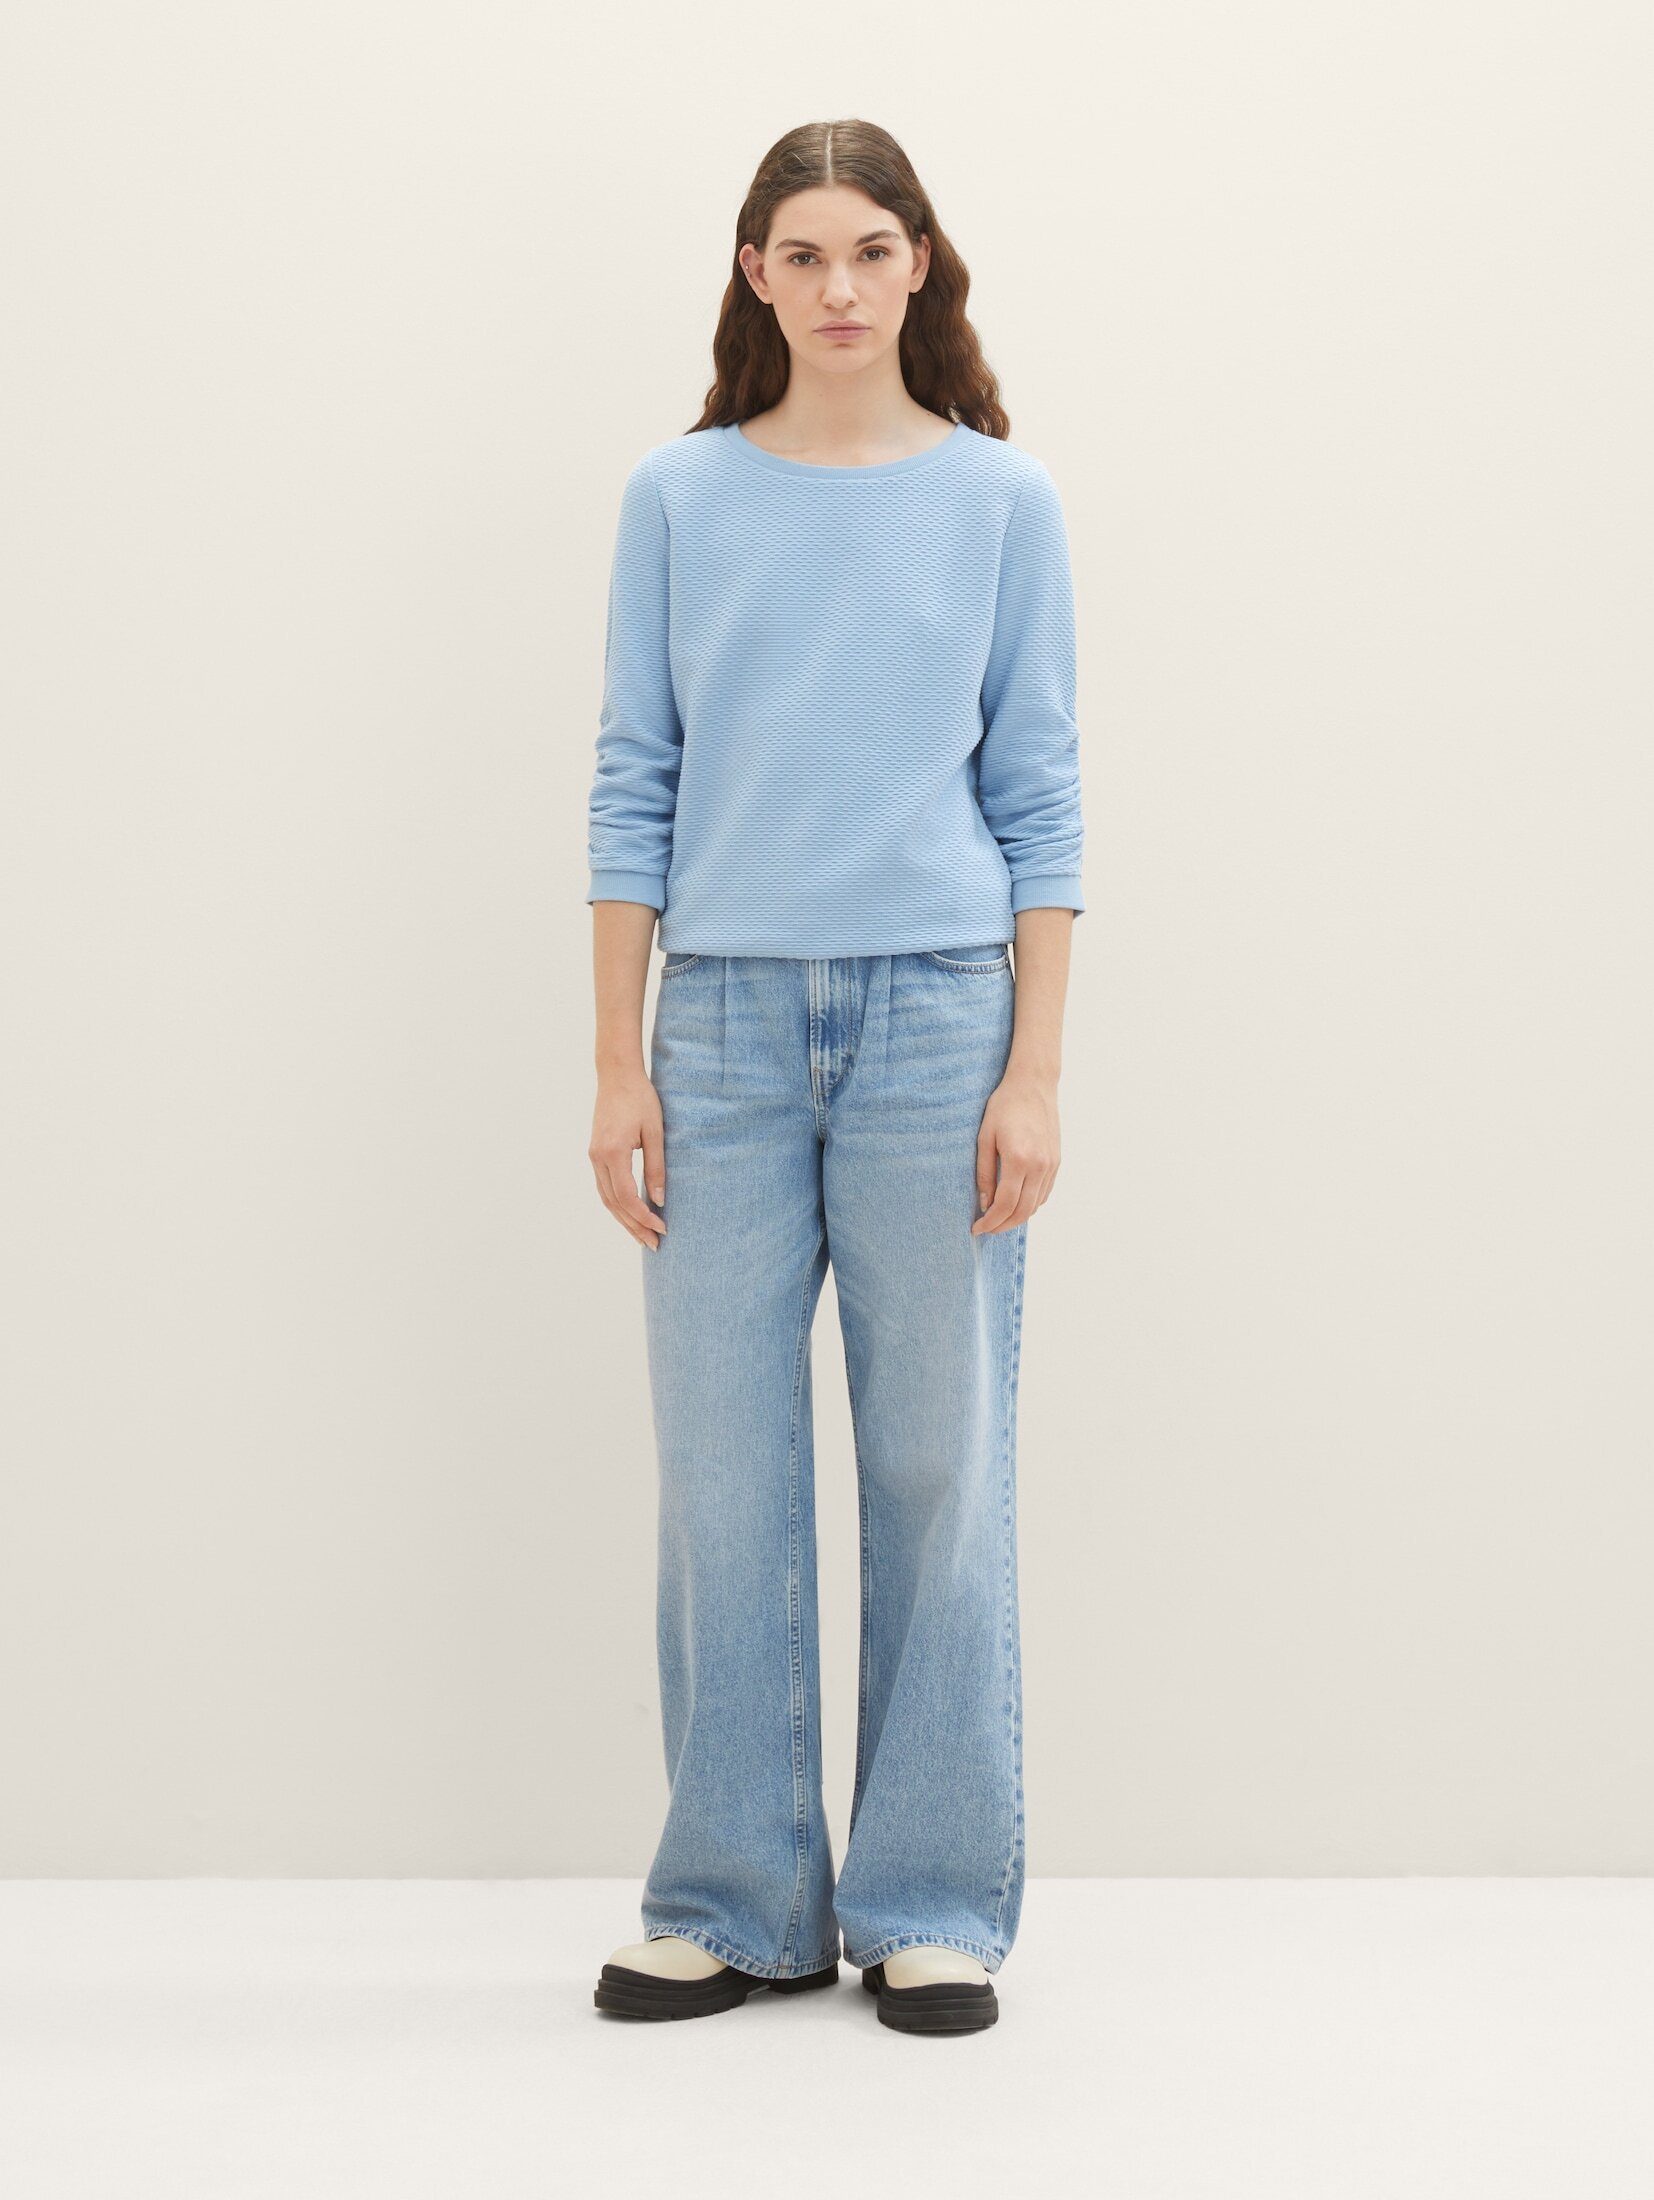 TOM TAILOR Denim Sweatshirt Blue Charming Strukturiertes Soft Sweatshirt